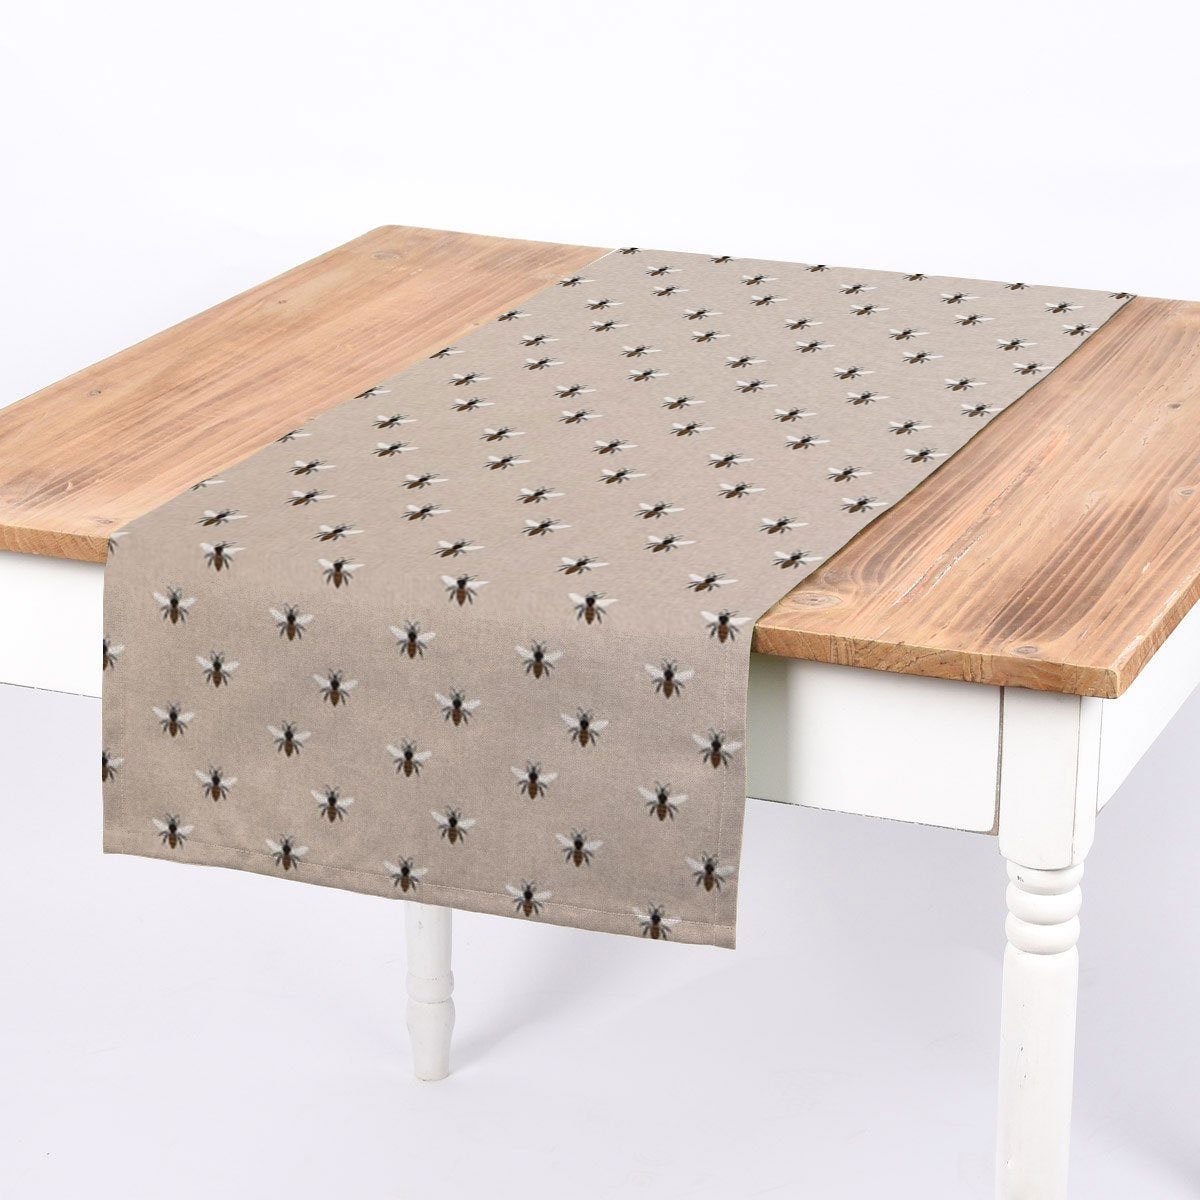 SCHÖNER LEBEN. Tischläufer SCHÖNER LEBEN. Tischläufer Bienen natur 40x160cm, handmade